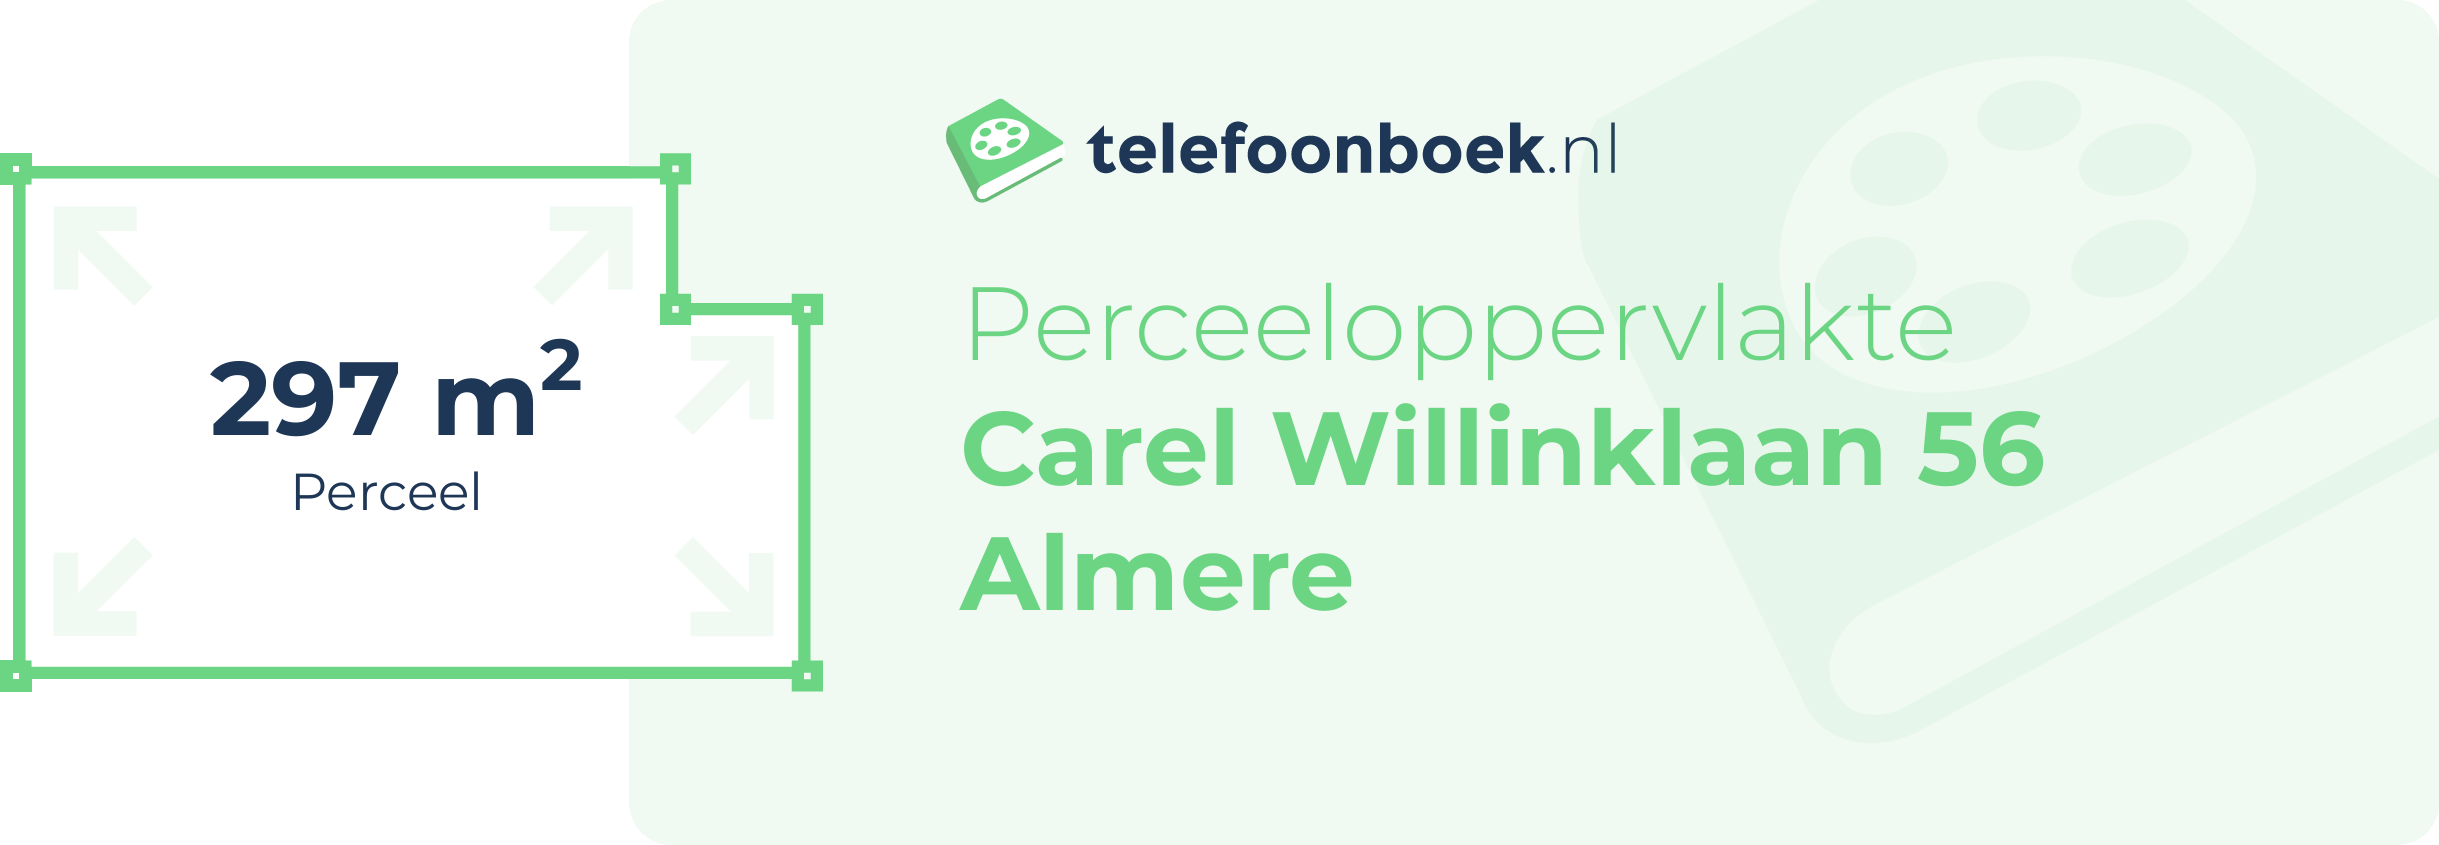 Perceeloppervlakte Carel Willinklaan 56 Almere